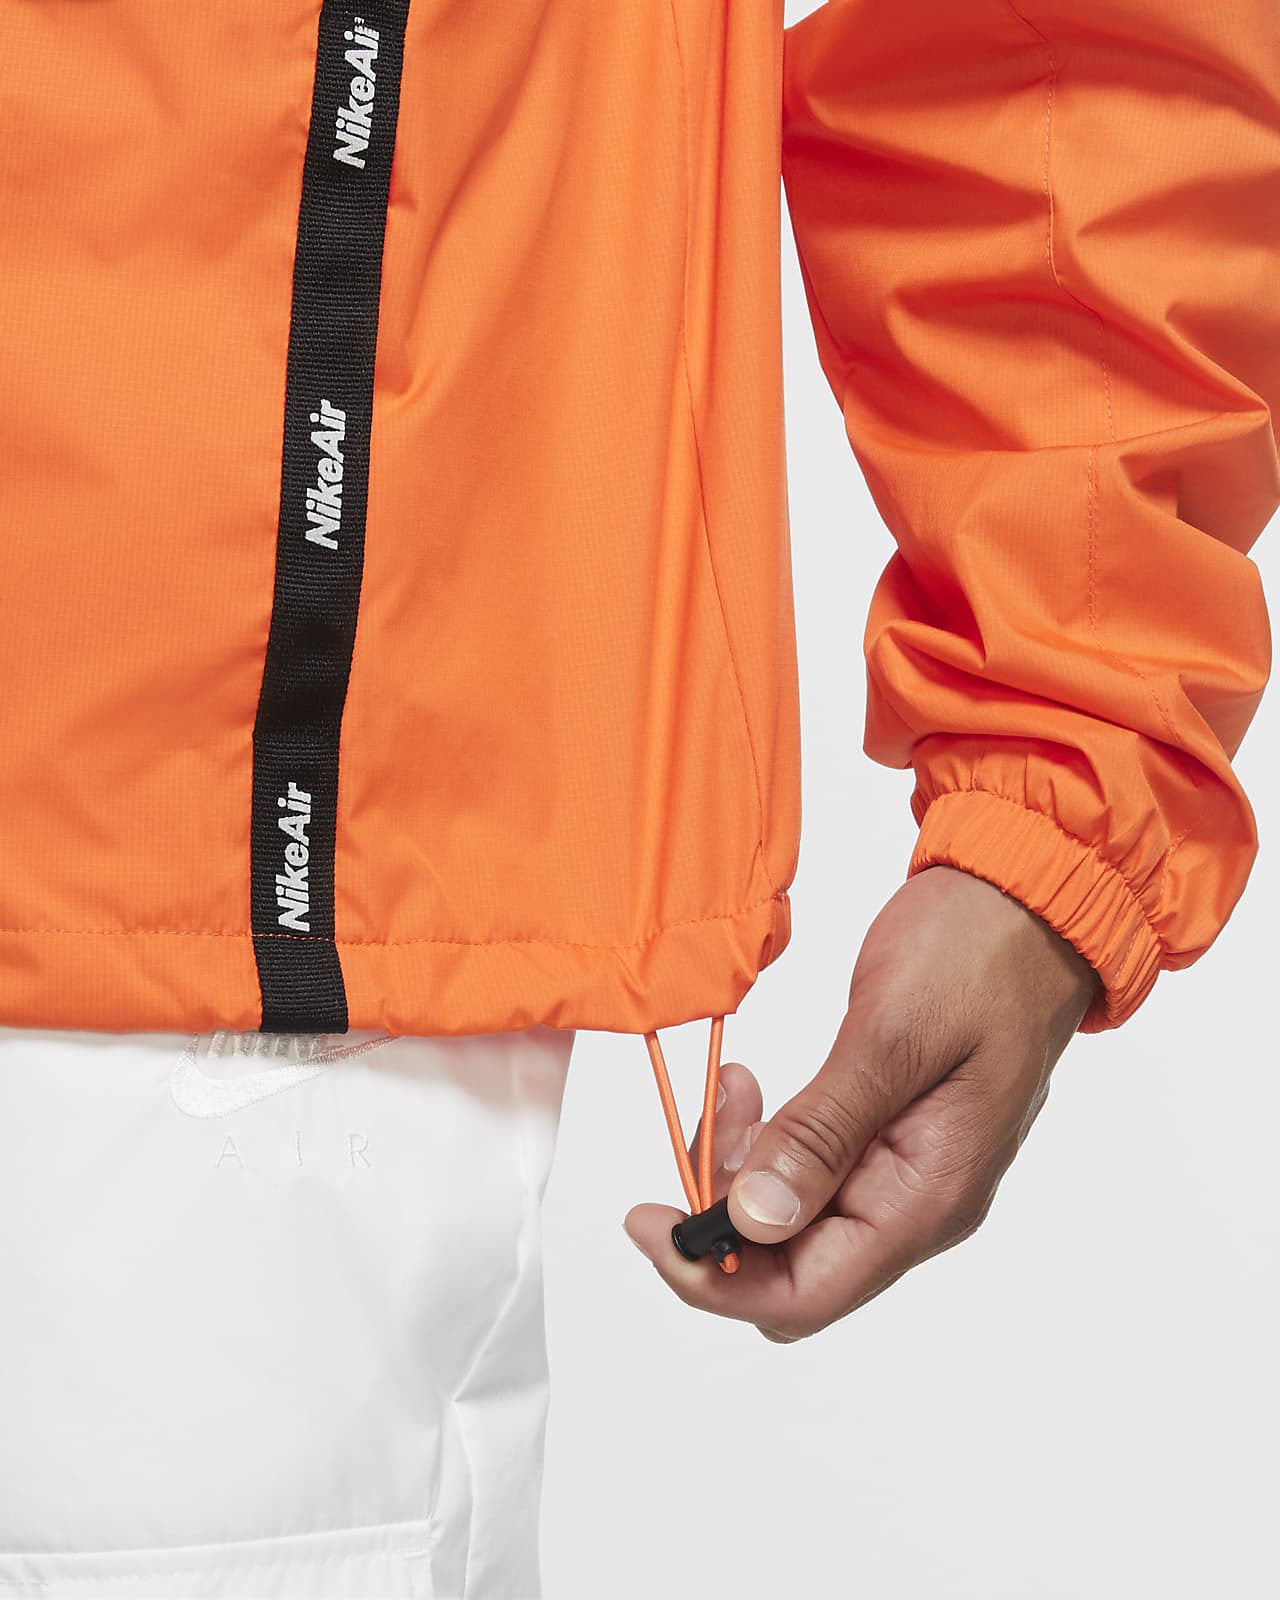 nike air tape overhead hoodie orange